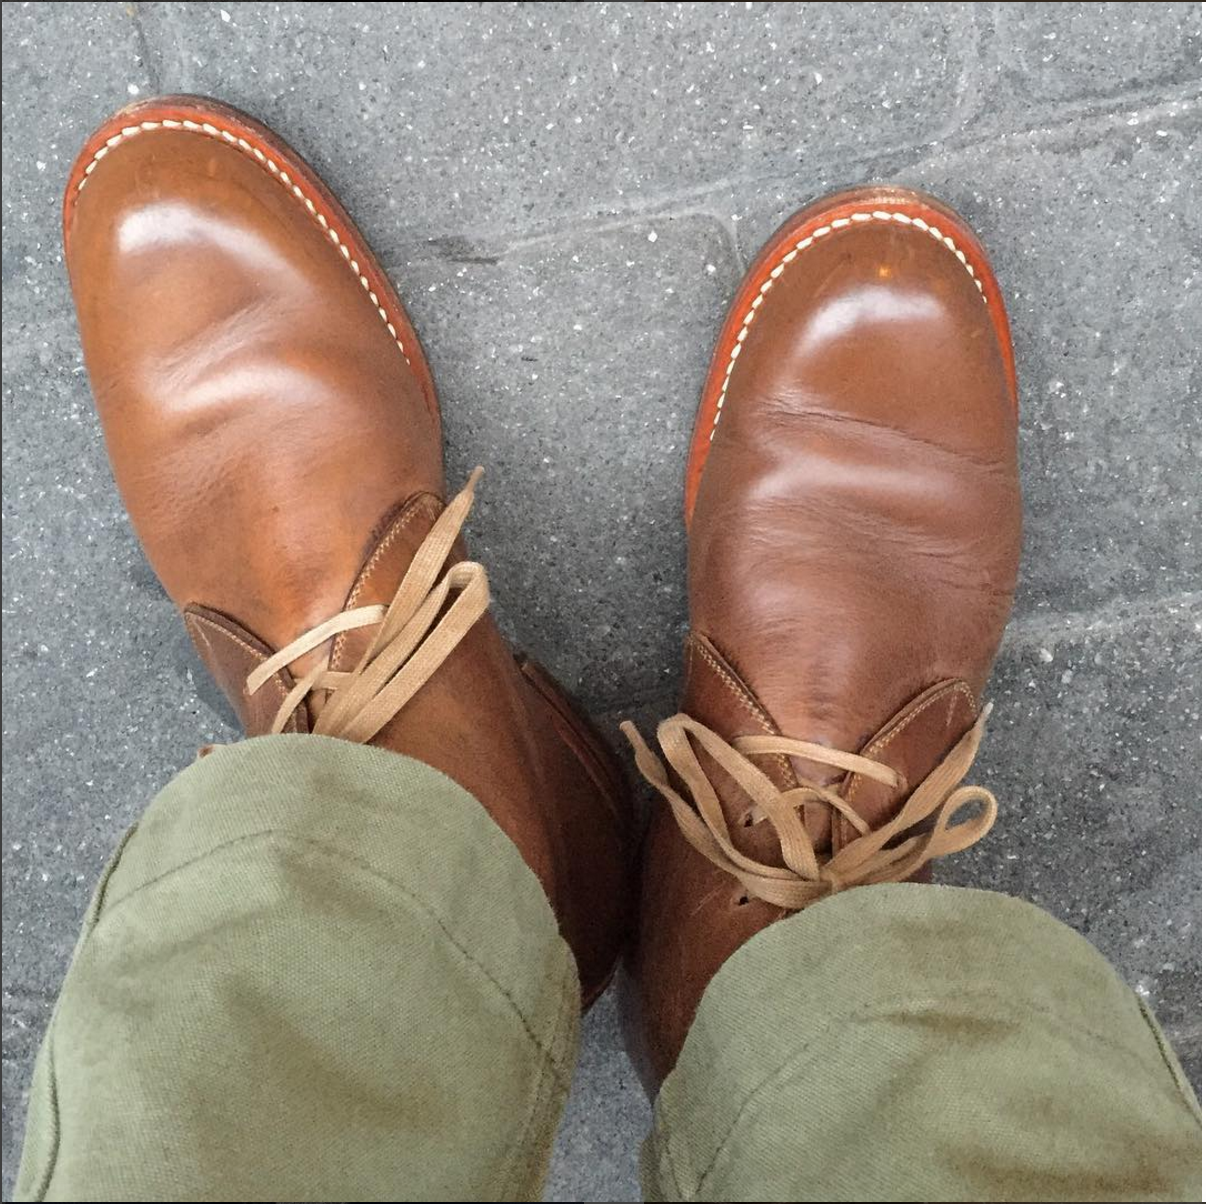 #PTOman Footwear Week – Put This On